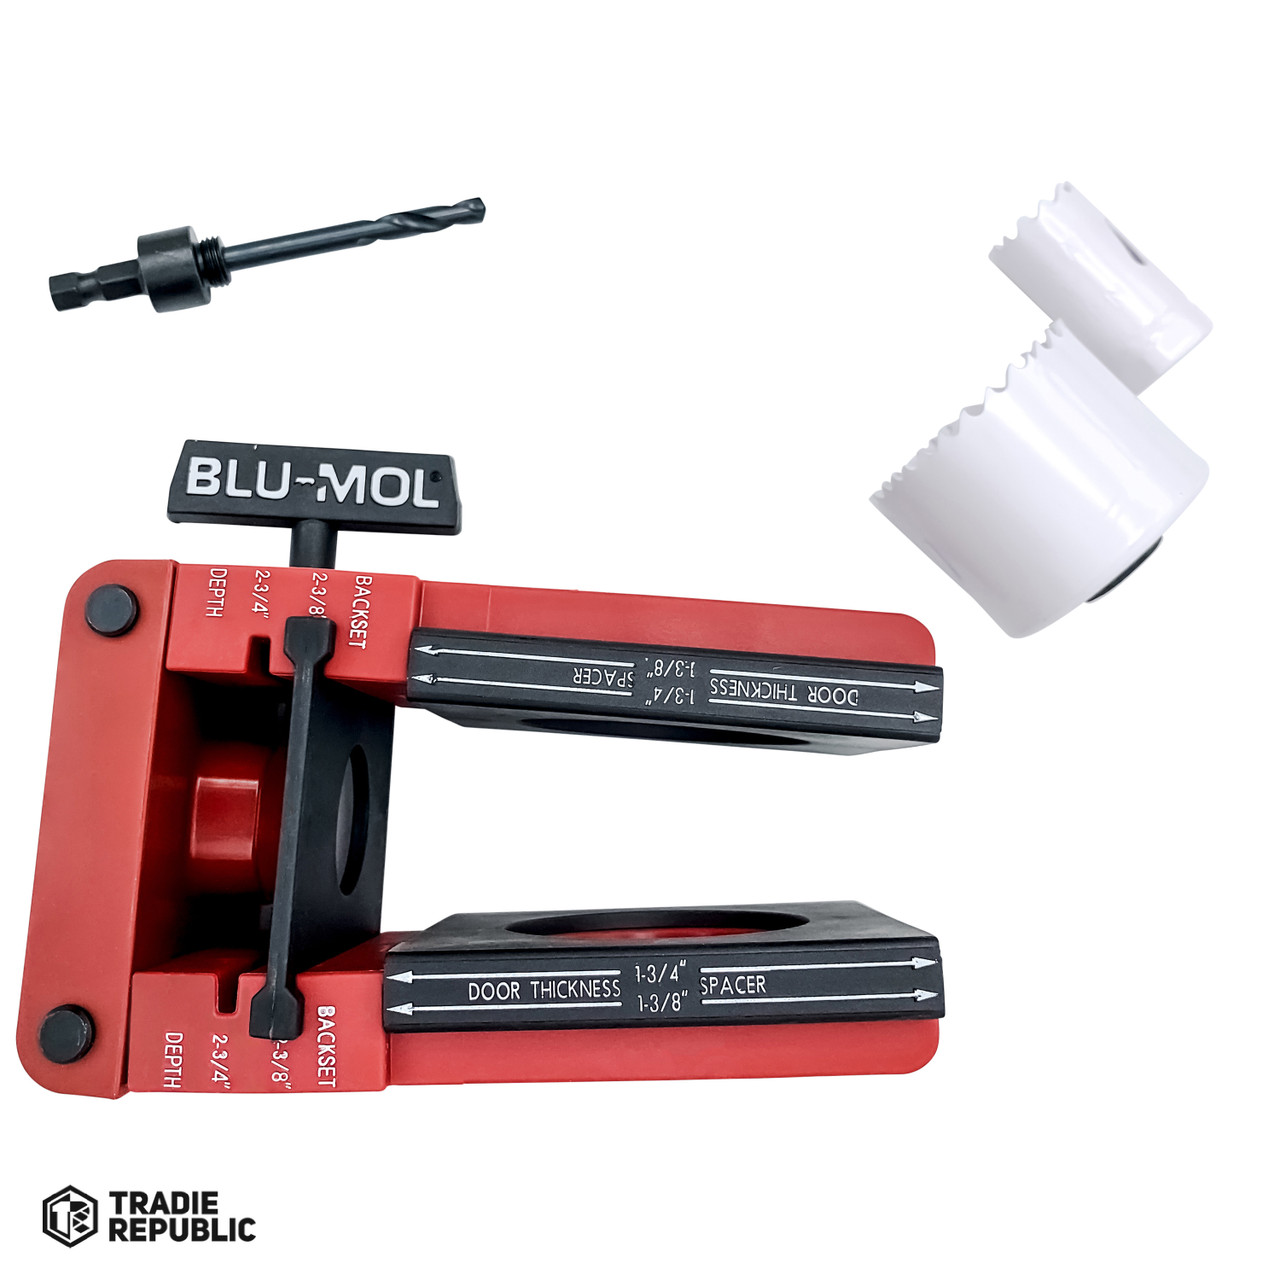 6574 Blu-Mol Professional Bi-Metal Lock Installation Kit